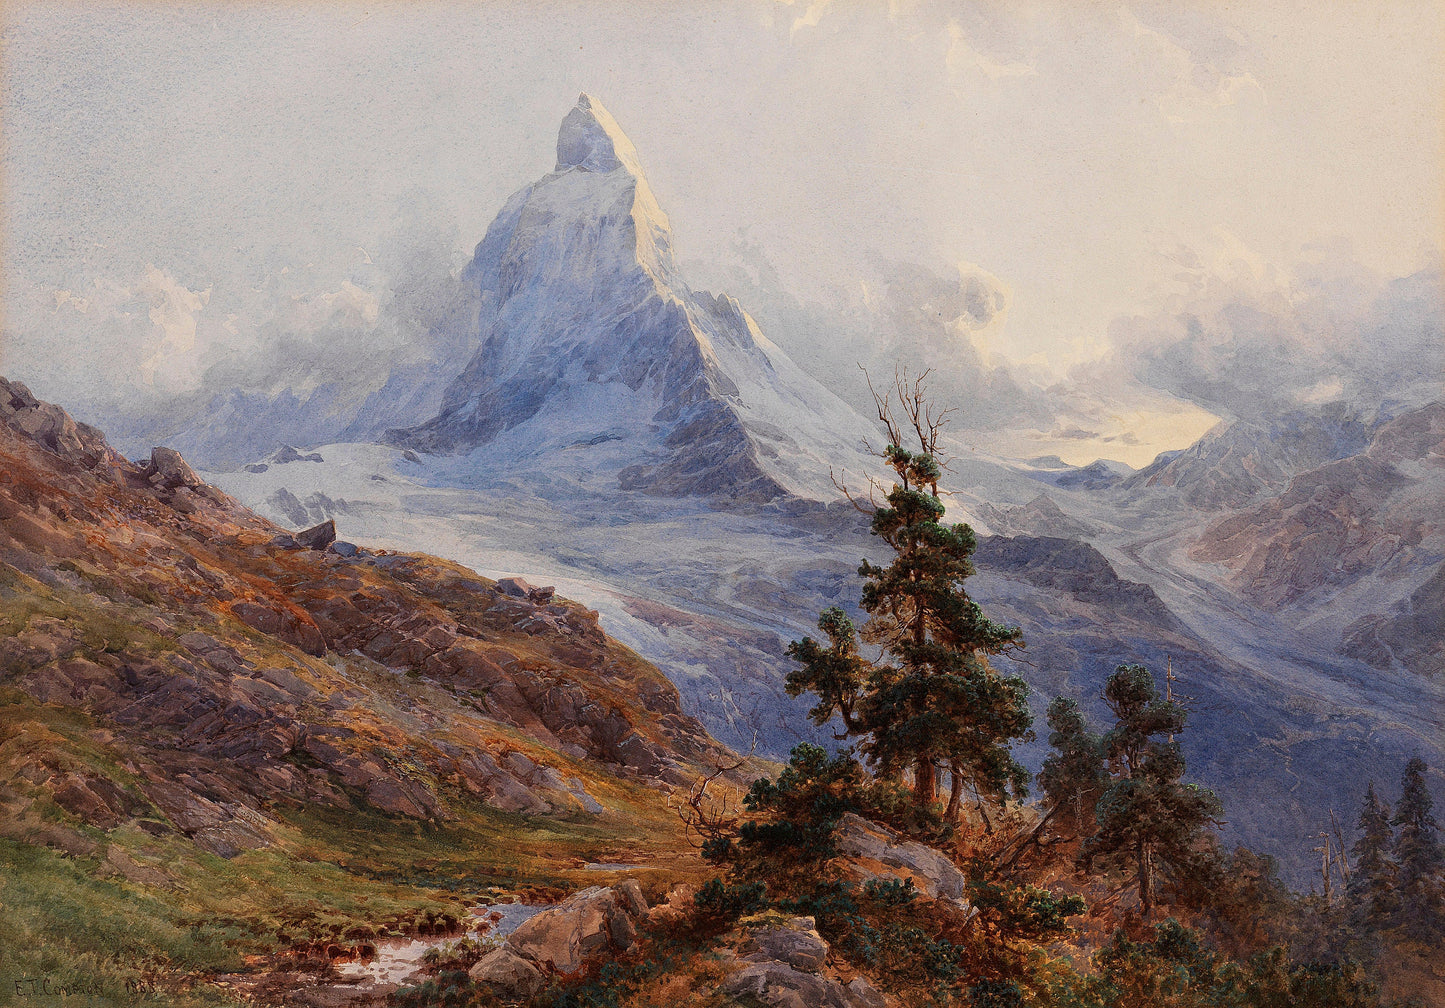 Edward Compton Mountain Landscape Paintings Set 2 [26 Images]